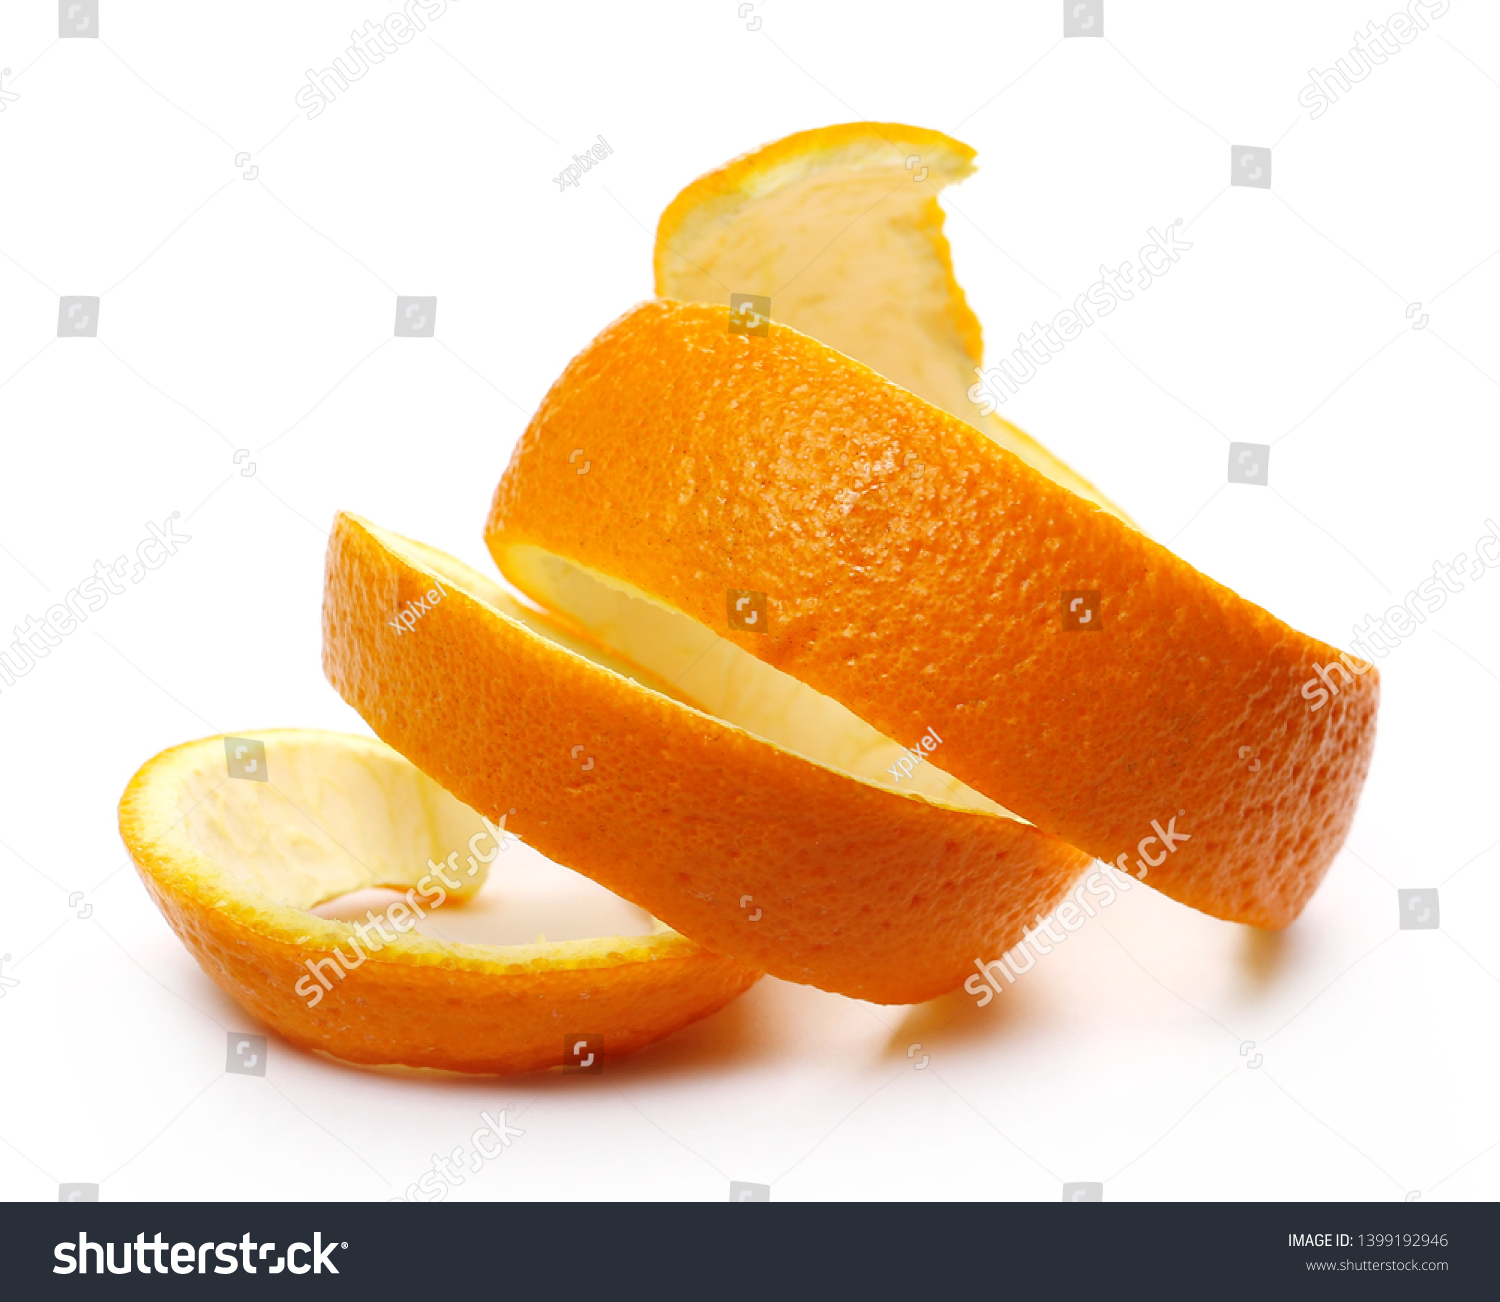 Orange peel isolated on white background #1399192946